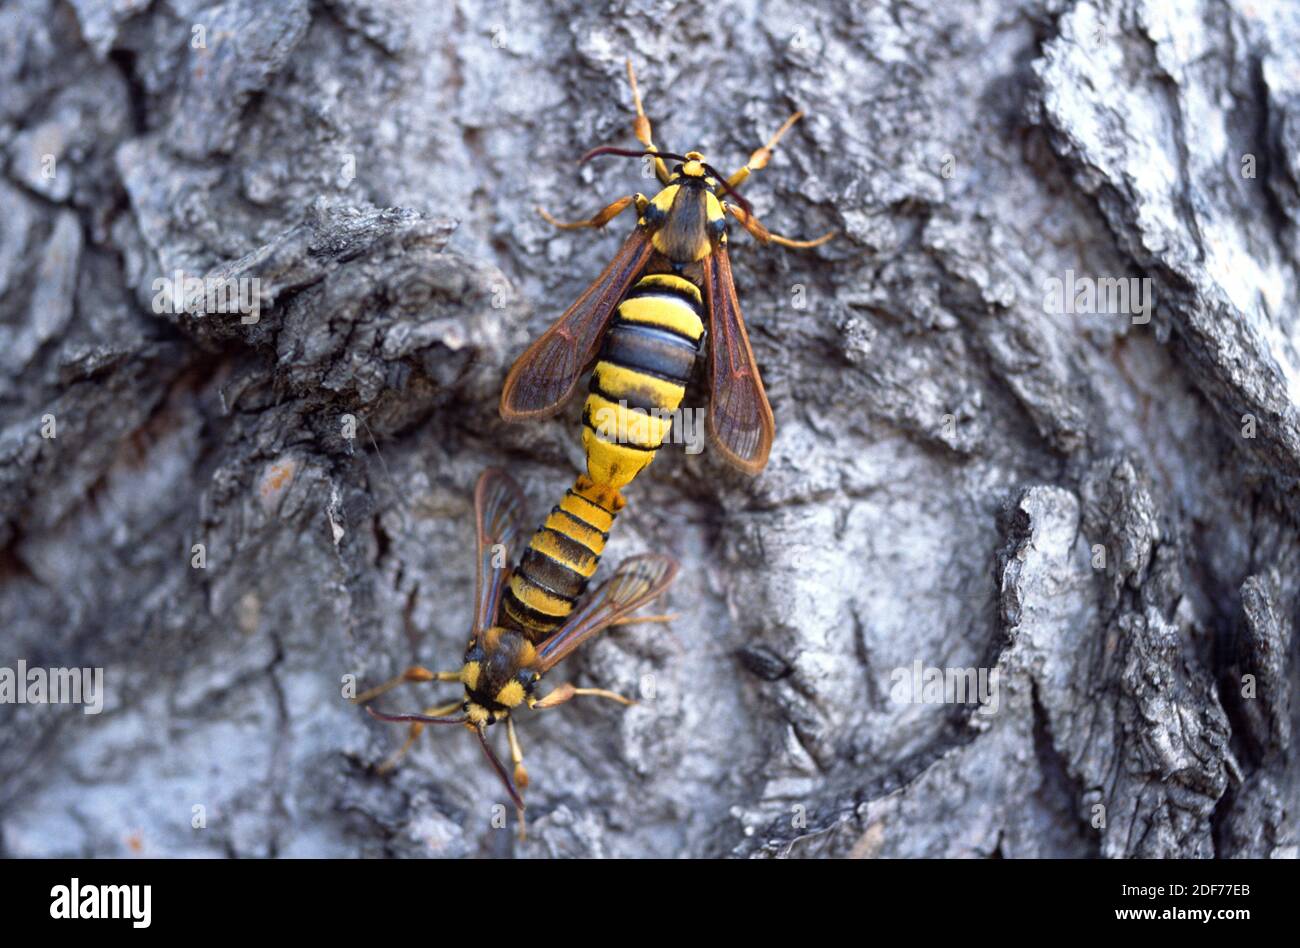 La polilla de Hornet (Sesia apiformis) es una polilla mímica nativa de Europa y Oriente Medio. Adultos, cópula. Foto de stock